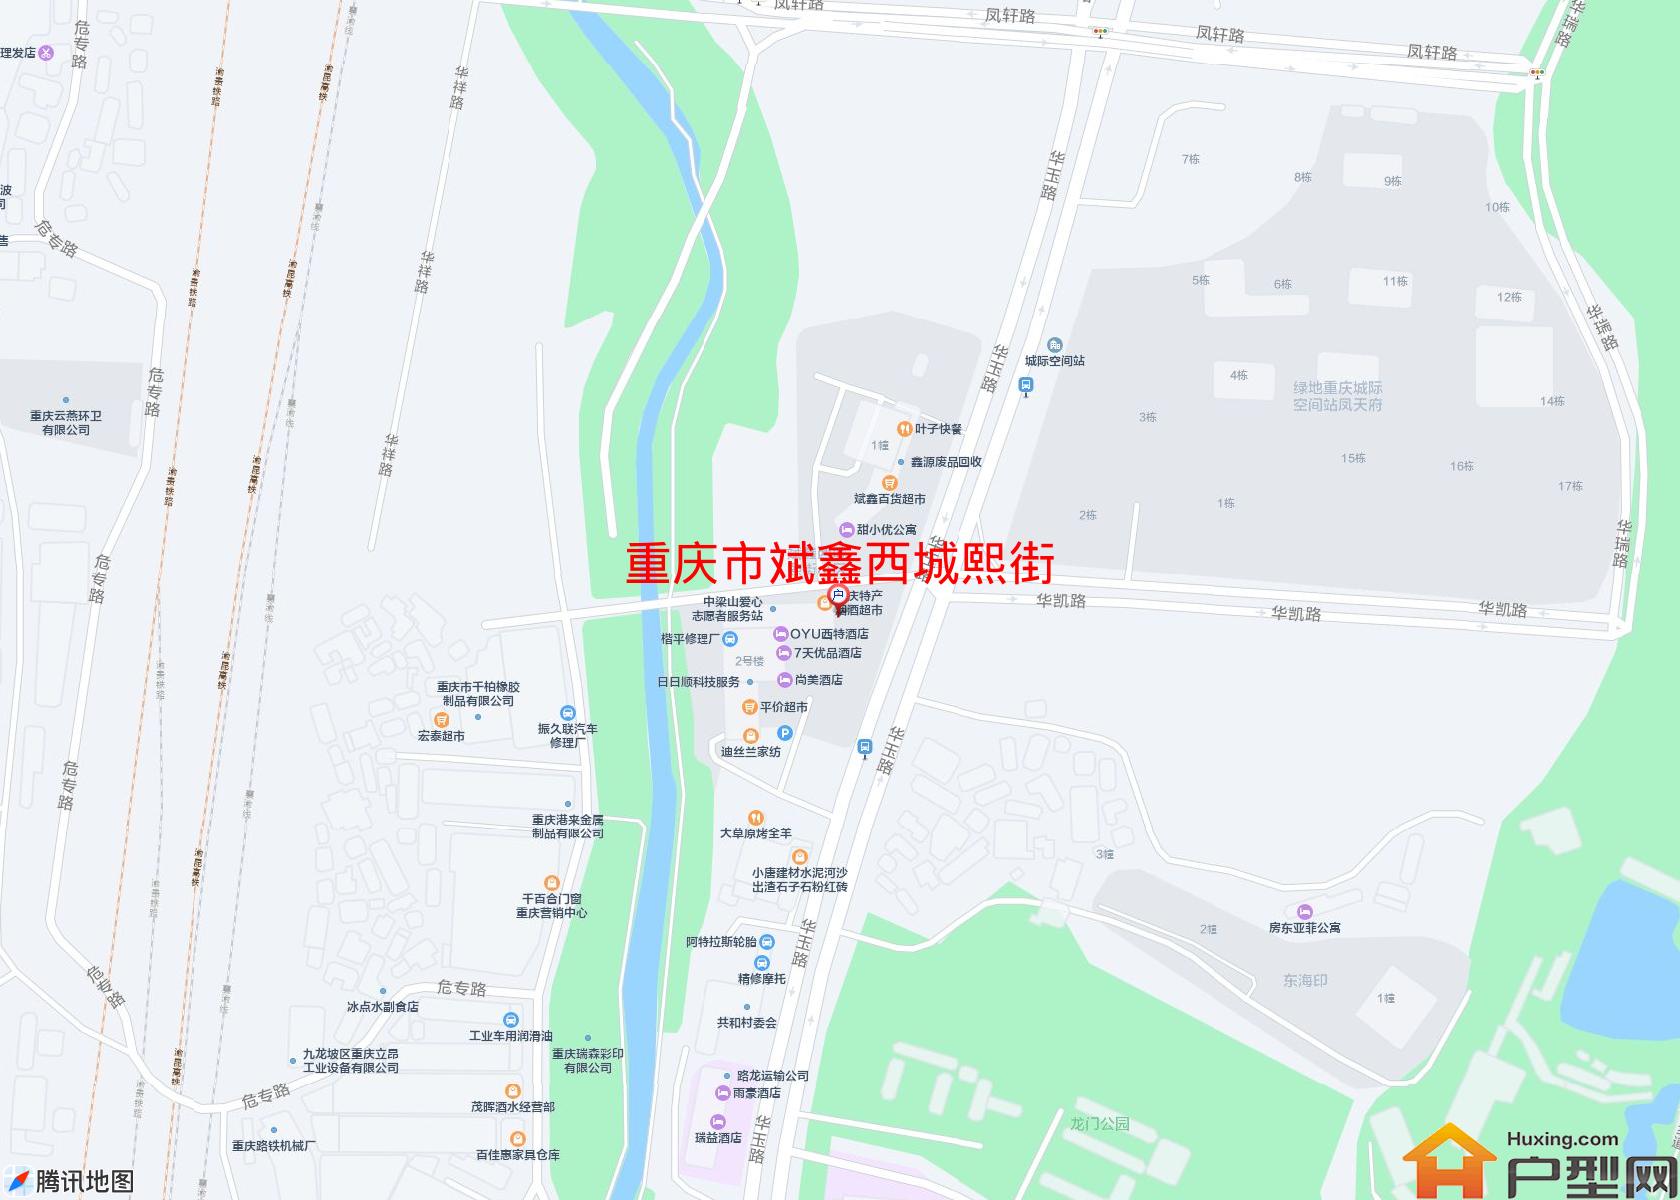 斌鑫西城熙街小区 - 户型网